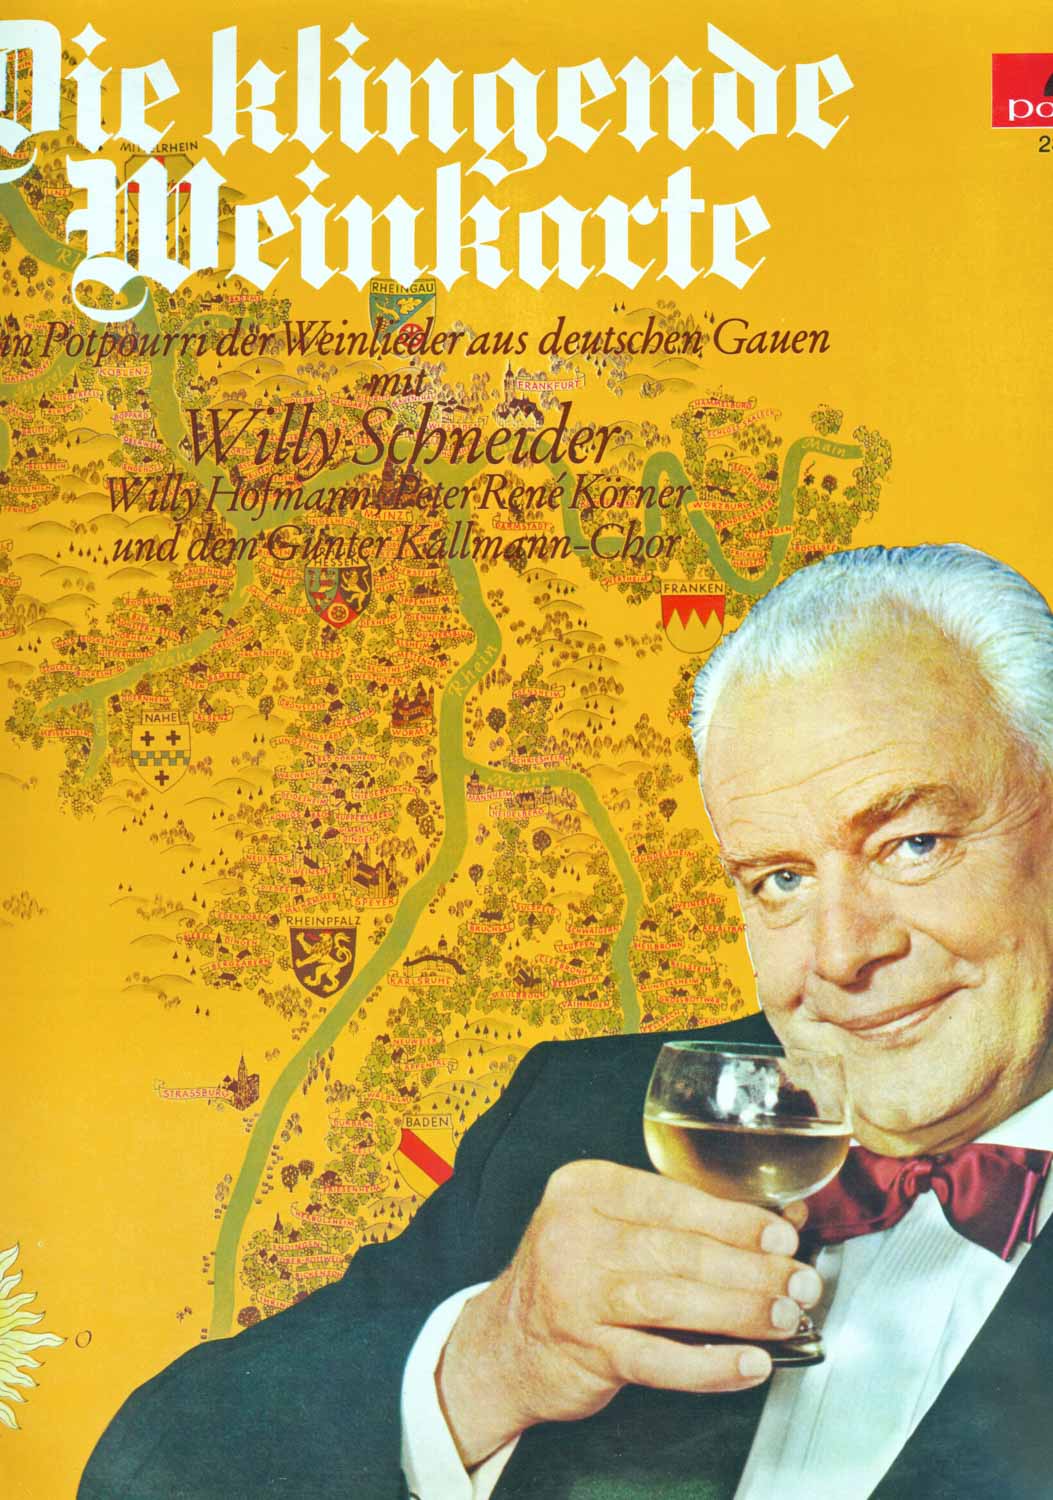 Willy Schneider, Willy Hofmann, René Körner, Günter Kallmann Chor  Die klingende Weinkarte (237 453)  *LP 12'' (Vinyl)*. 